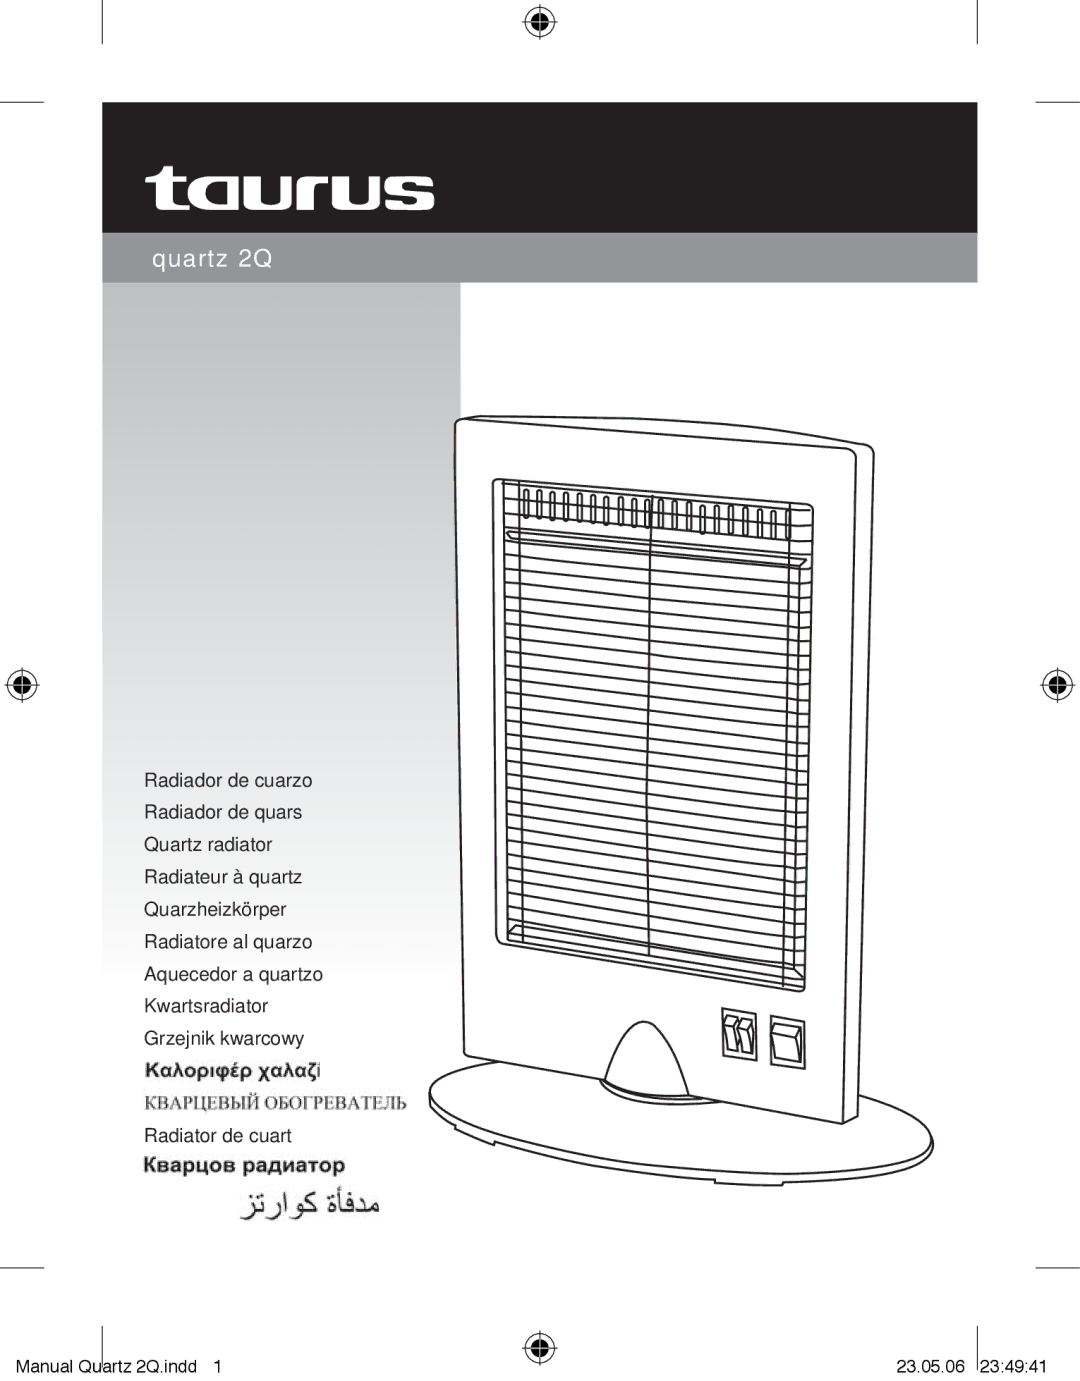 Taurus Group QUARTZ2Q manual Quartz 2Q 